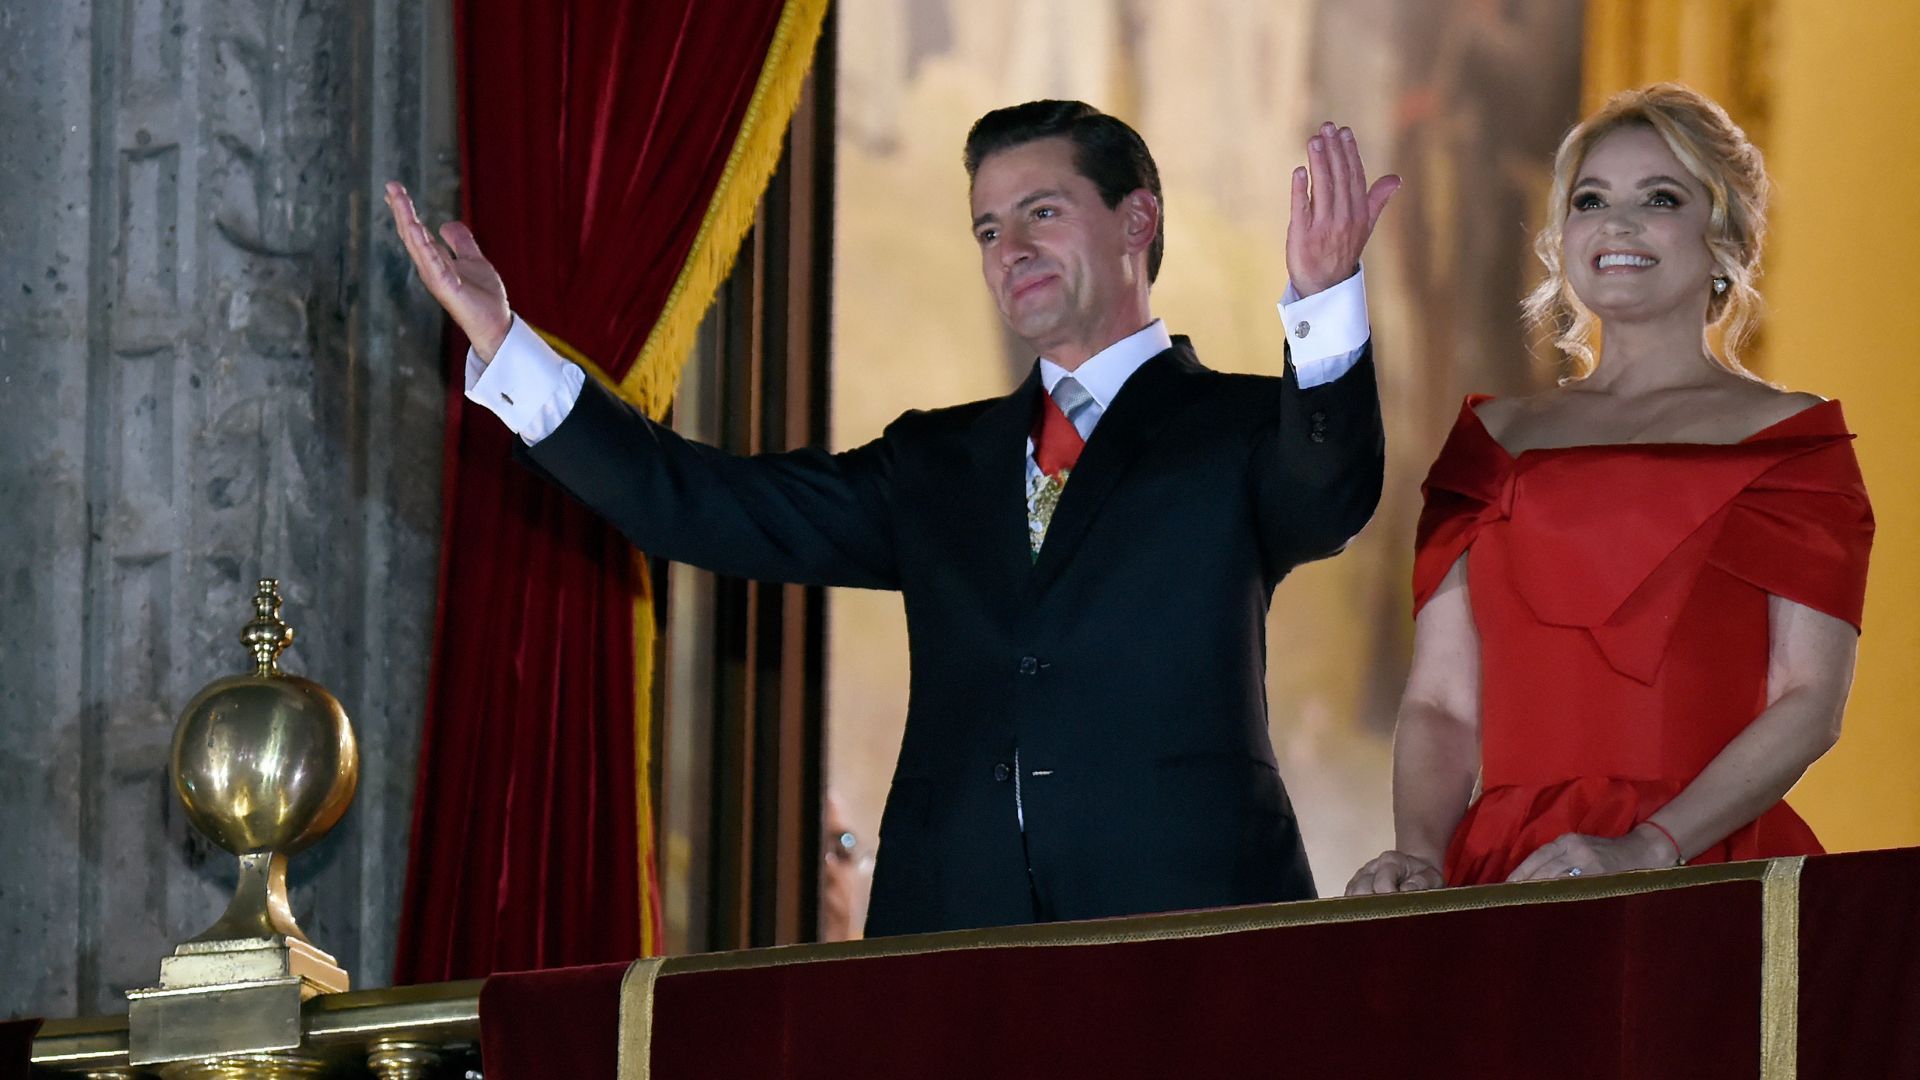 World leader: Enrique Peña Nieto